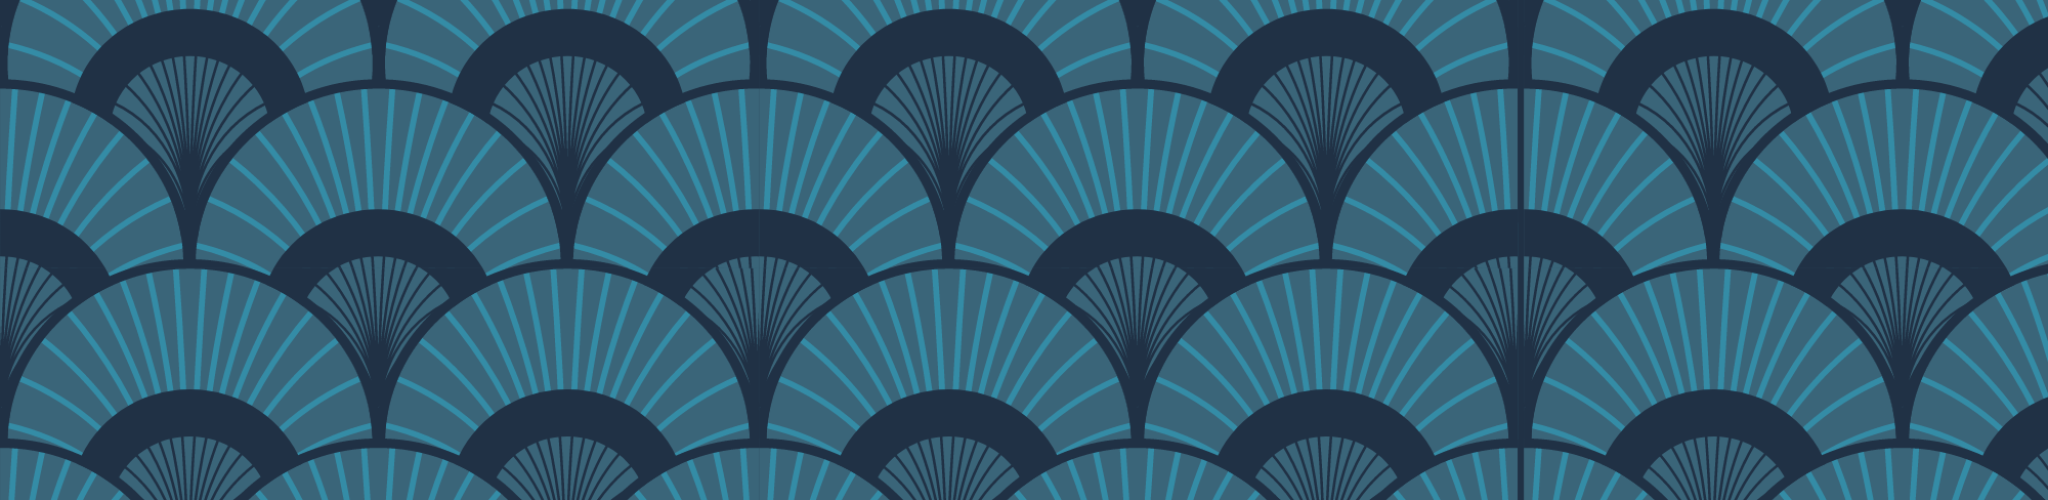 Blue-fan-pattern